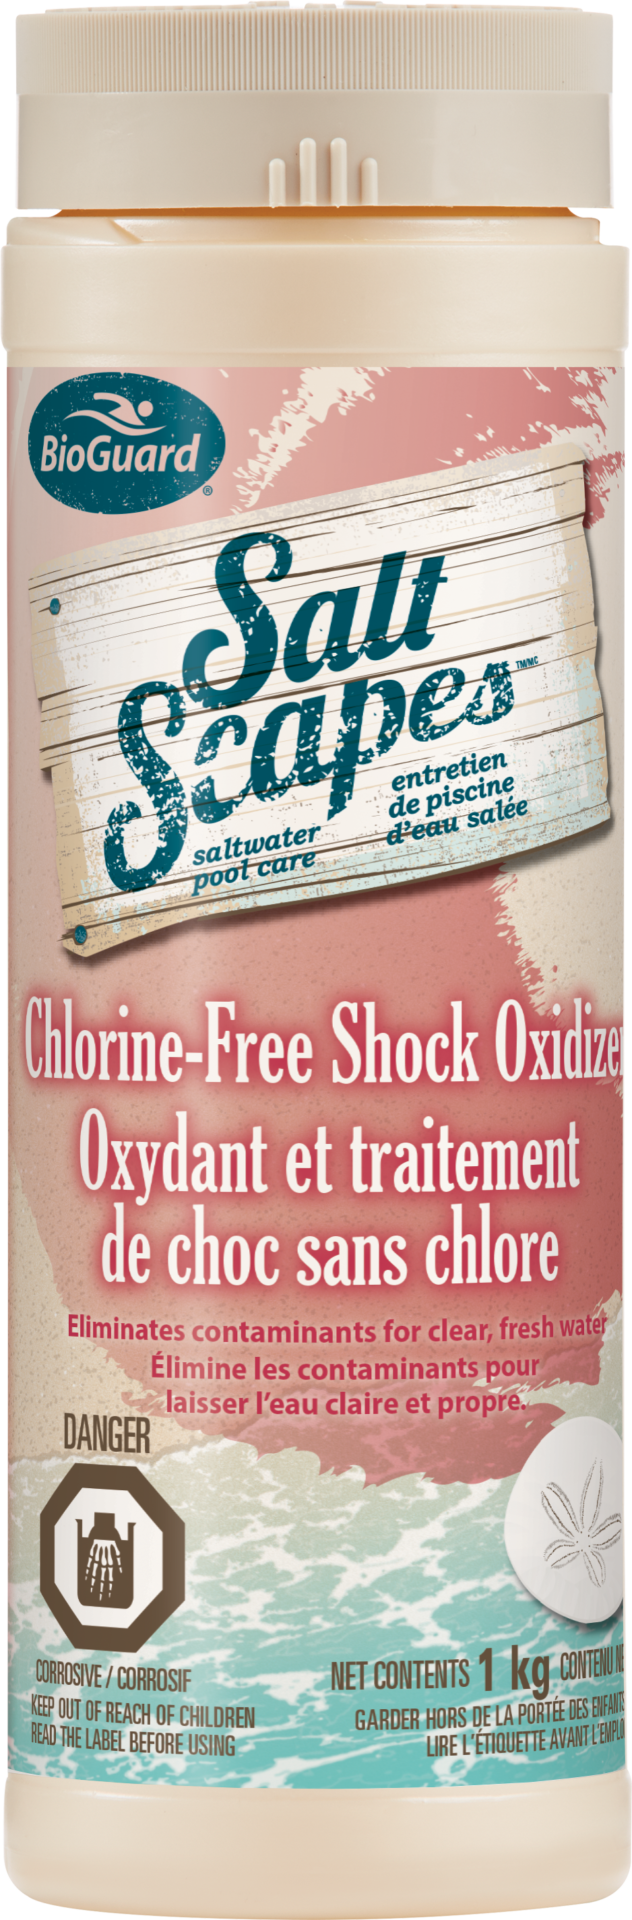 SaltScapes Chlorine Free Shock Oxidizer 1kg - SaltScapes Chlorine-Free Shock Oxidizer 1kg